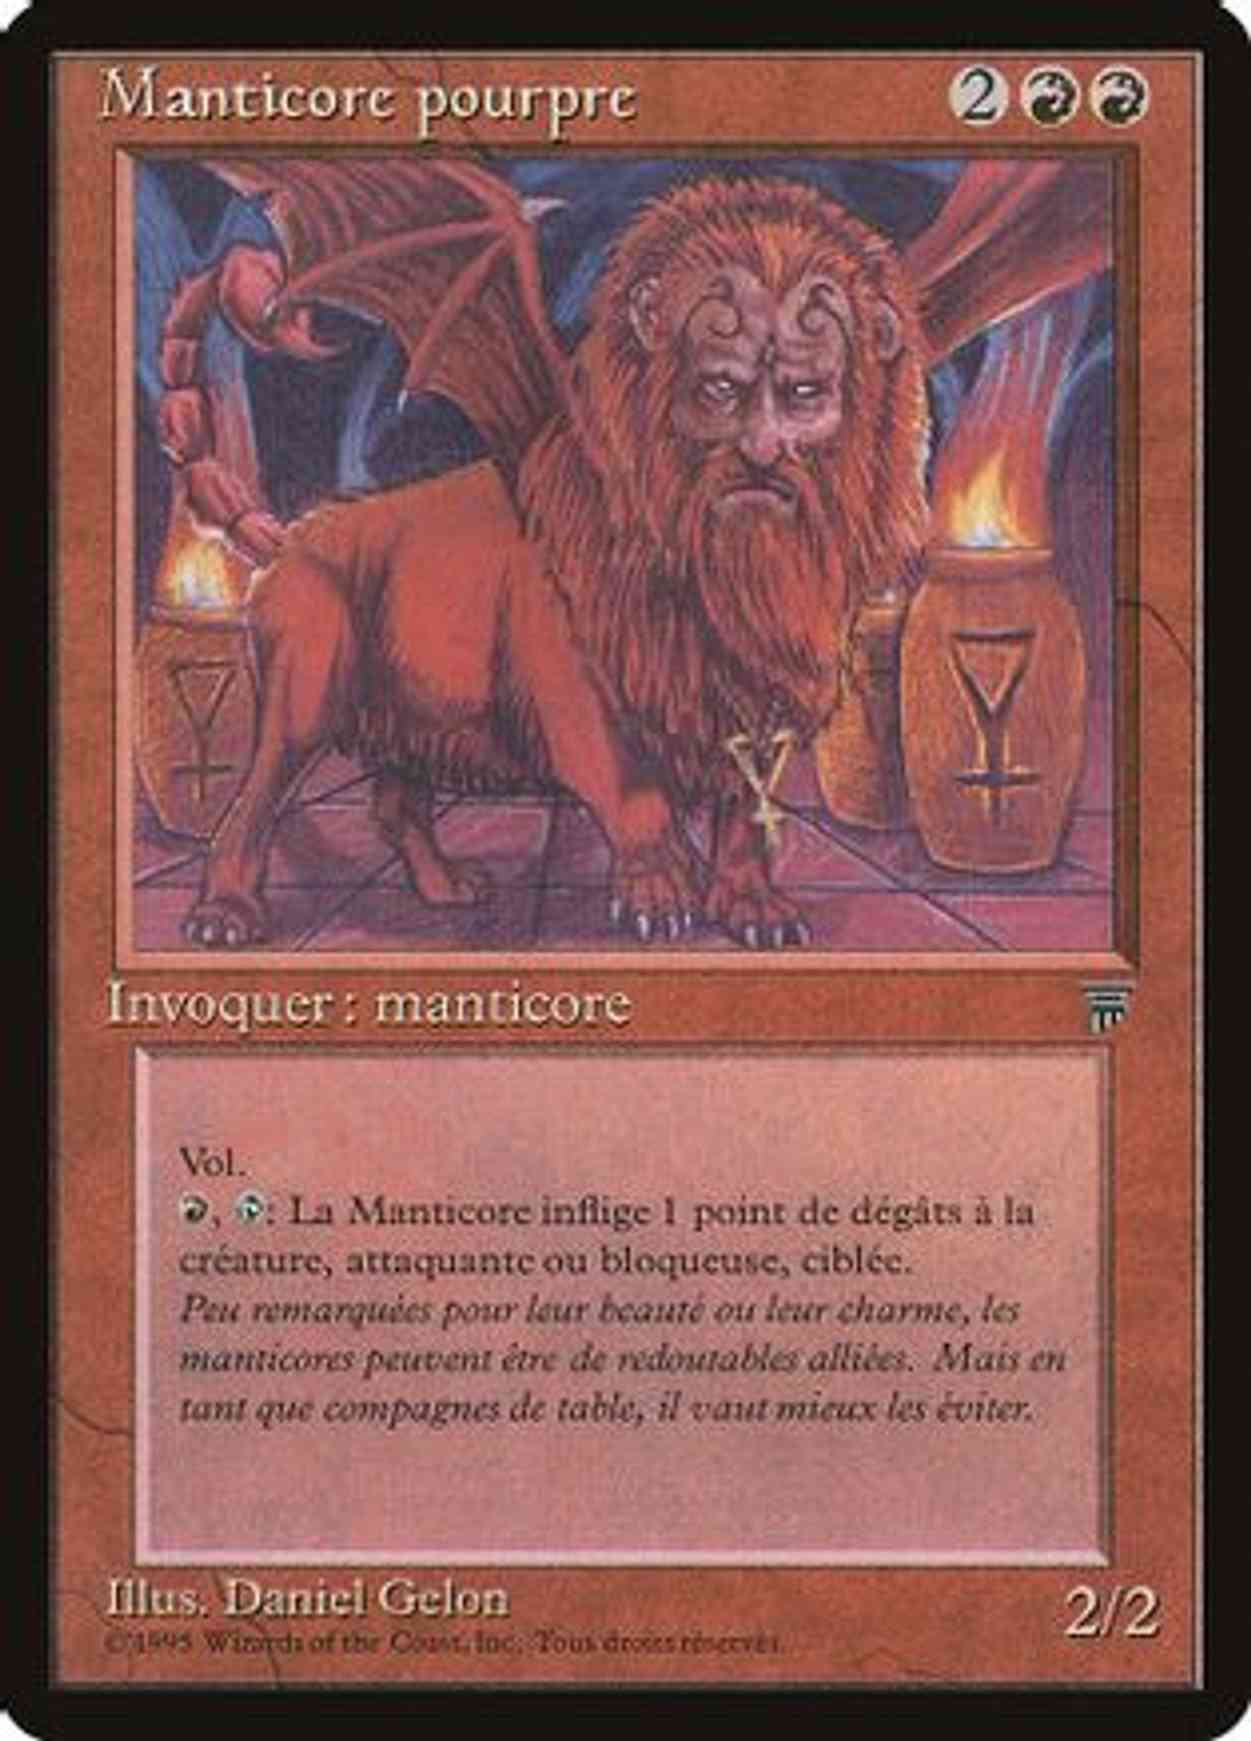 Crimson Manticore (French) - "Manticore pourpre" magic card front